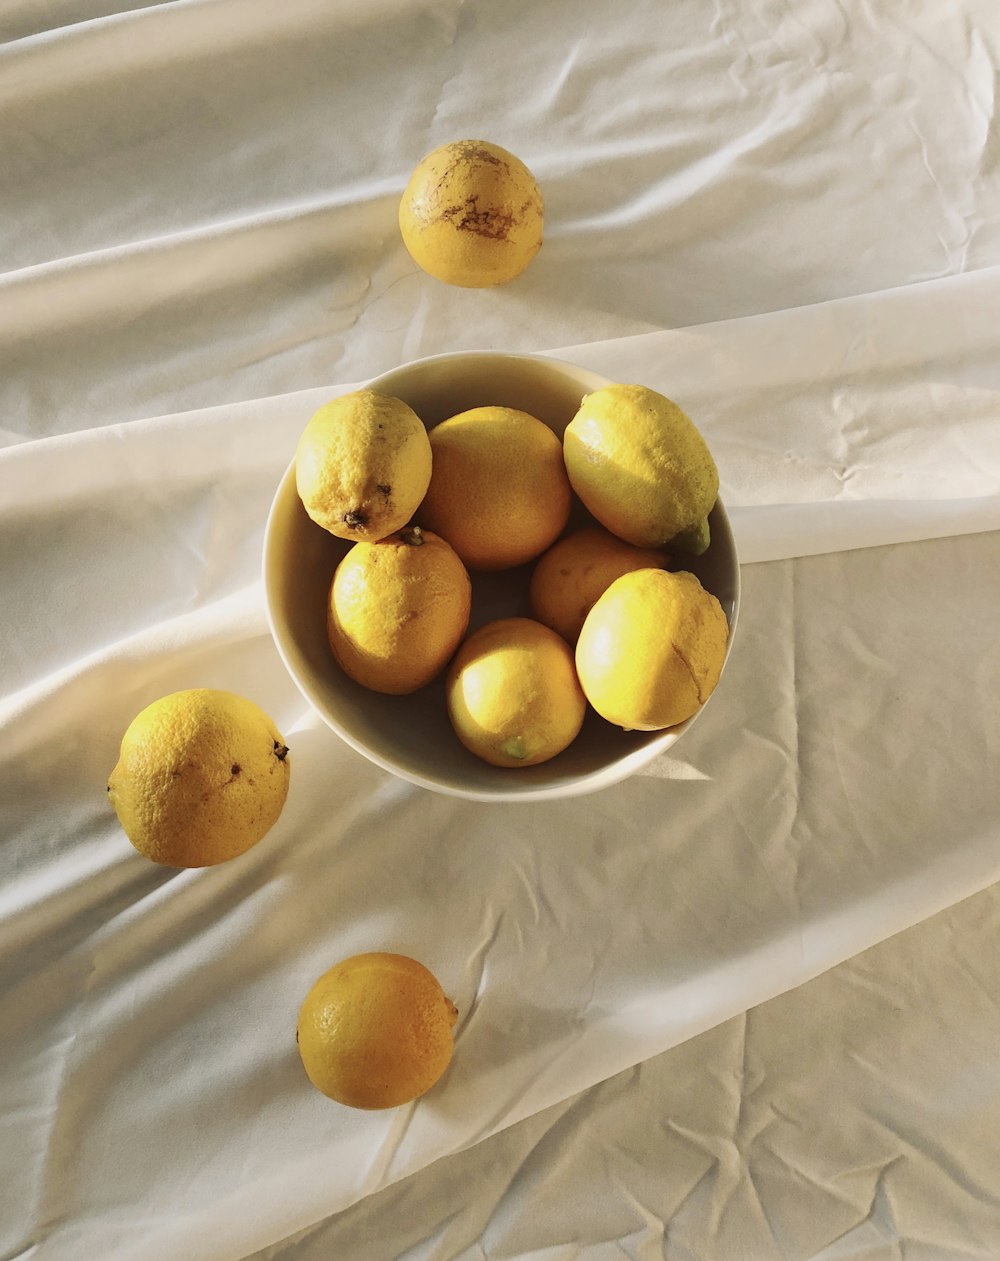 yellow citrus fruits on white textile